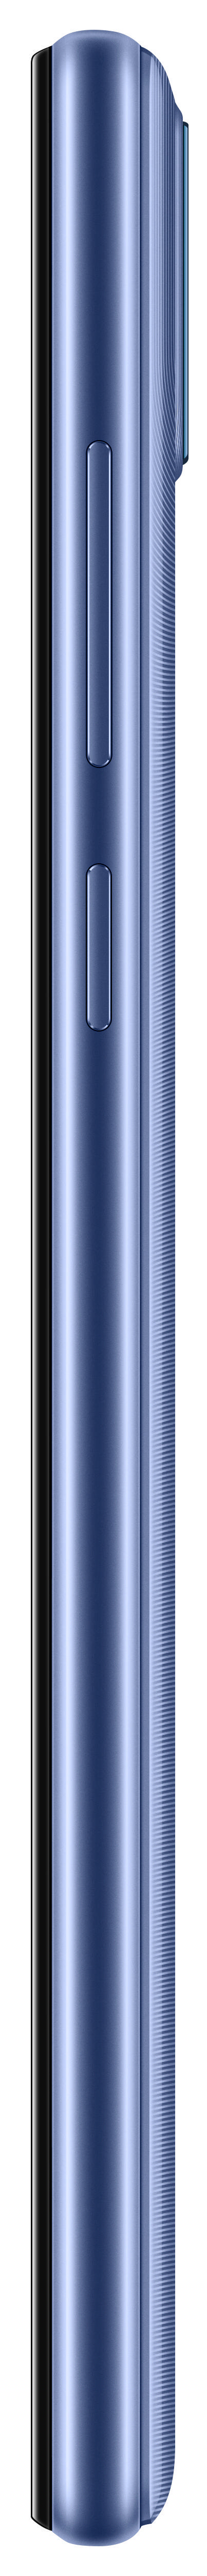 HUAWEI Y5P SIM GB Phantom Dual 32 Blue